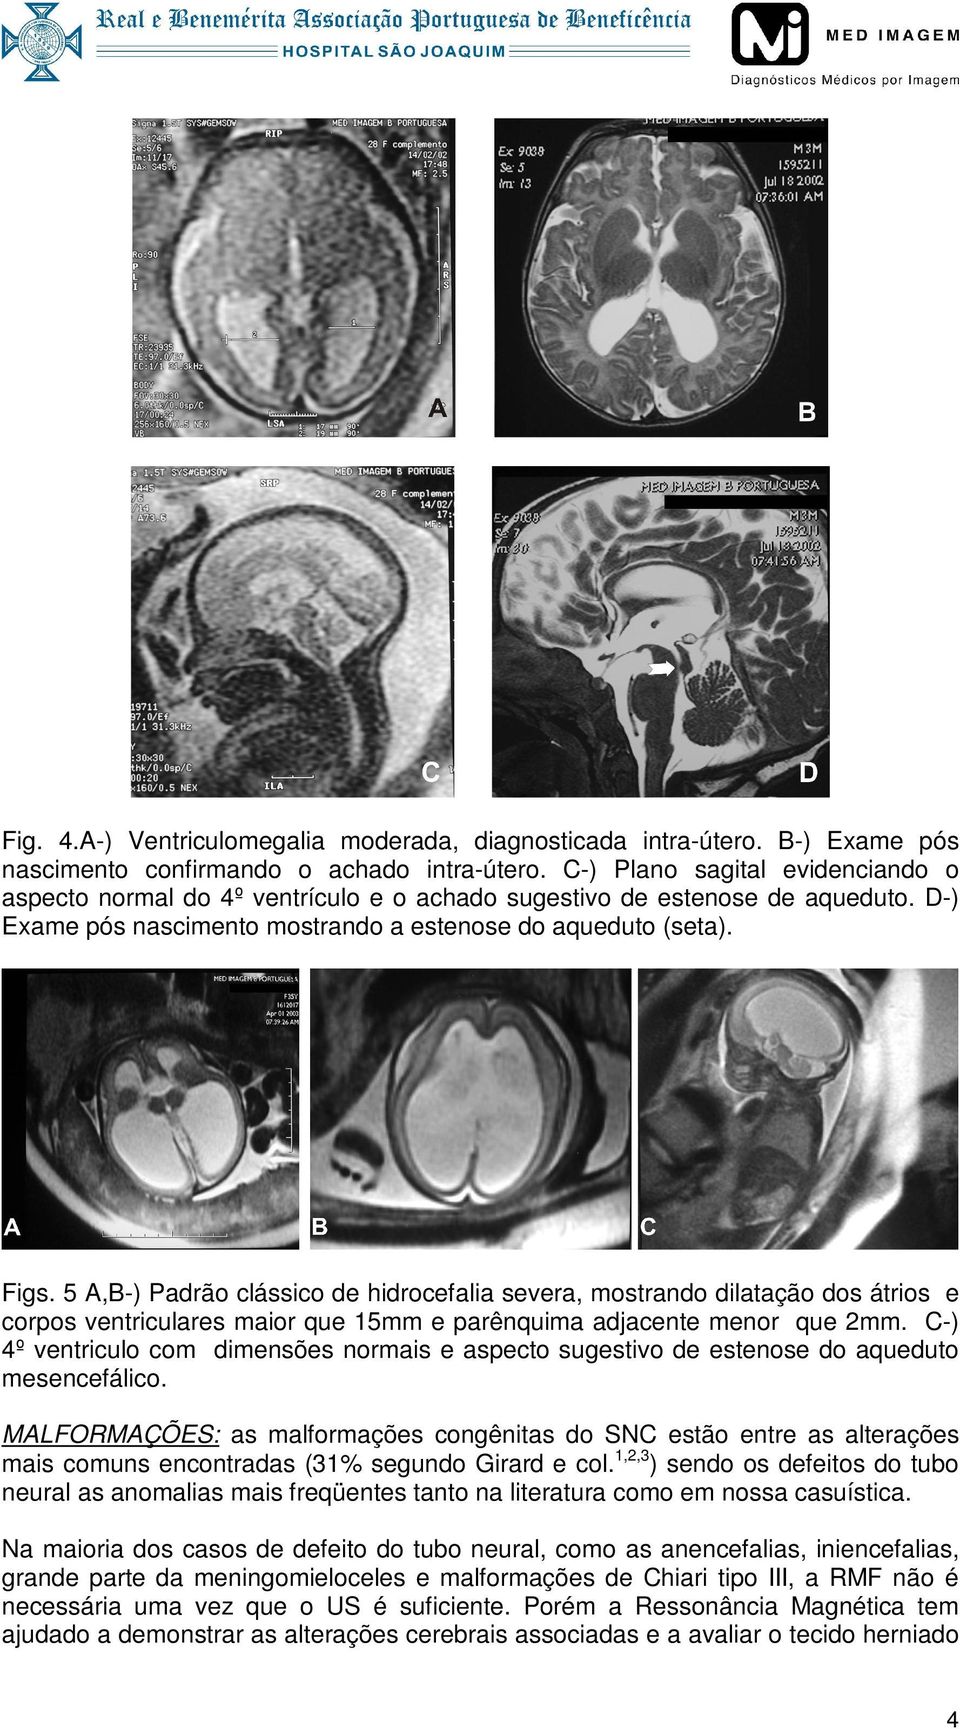 5 A,B-) Padrão clássico de hidrocefalia severa, mostrando dilatação dos átrios e corpos ventriculares maior que 15mm e parênquima adjacente menor que 2mm.